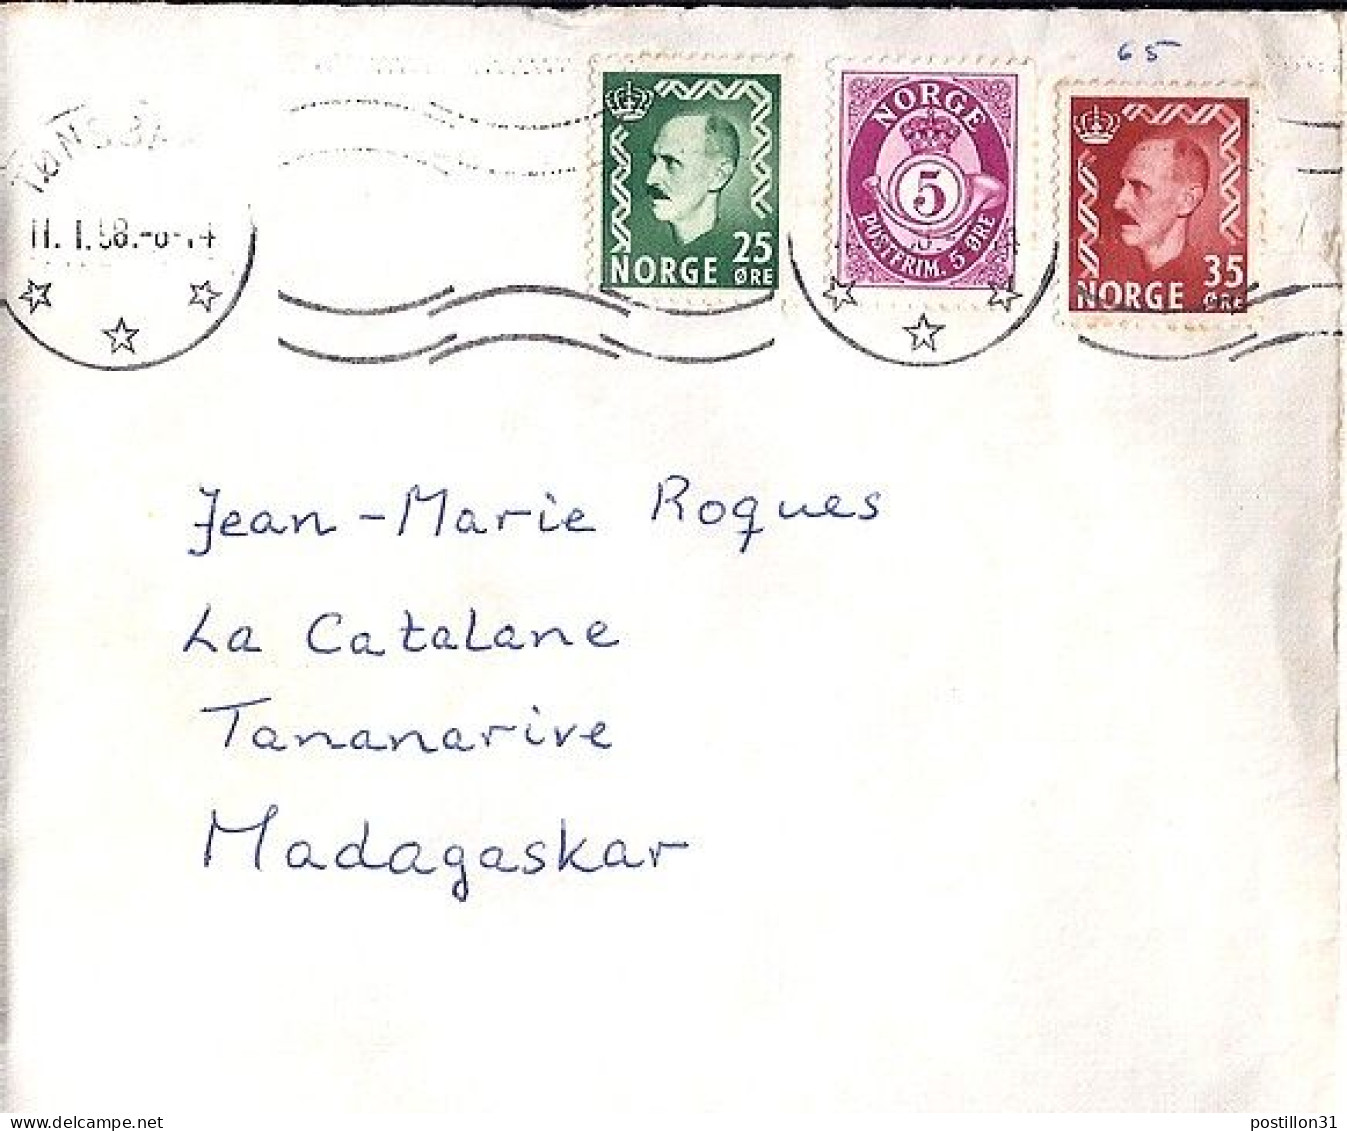 NORVEGE N° 361/362/171 S/L DU 11.1.58 POUR MADAGASCAR - Briefe U. Dokumente